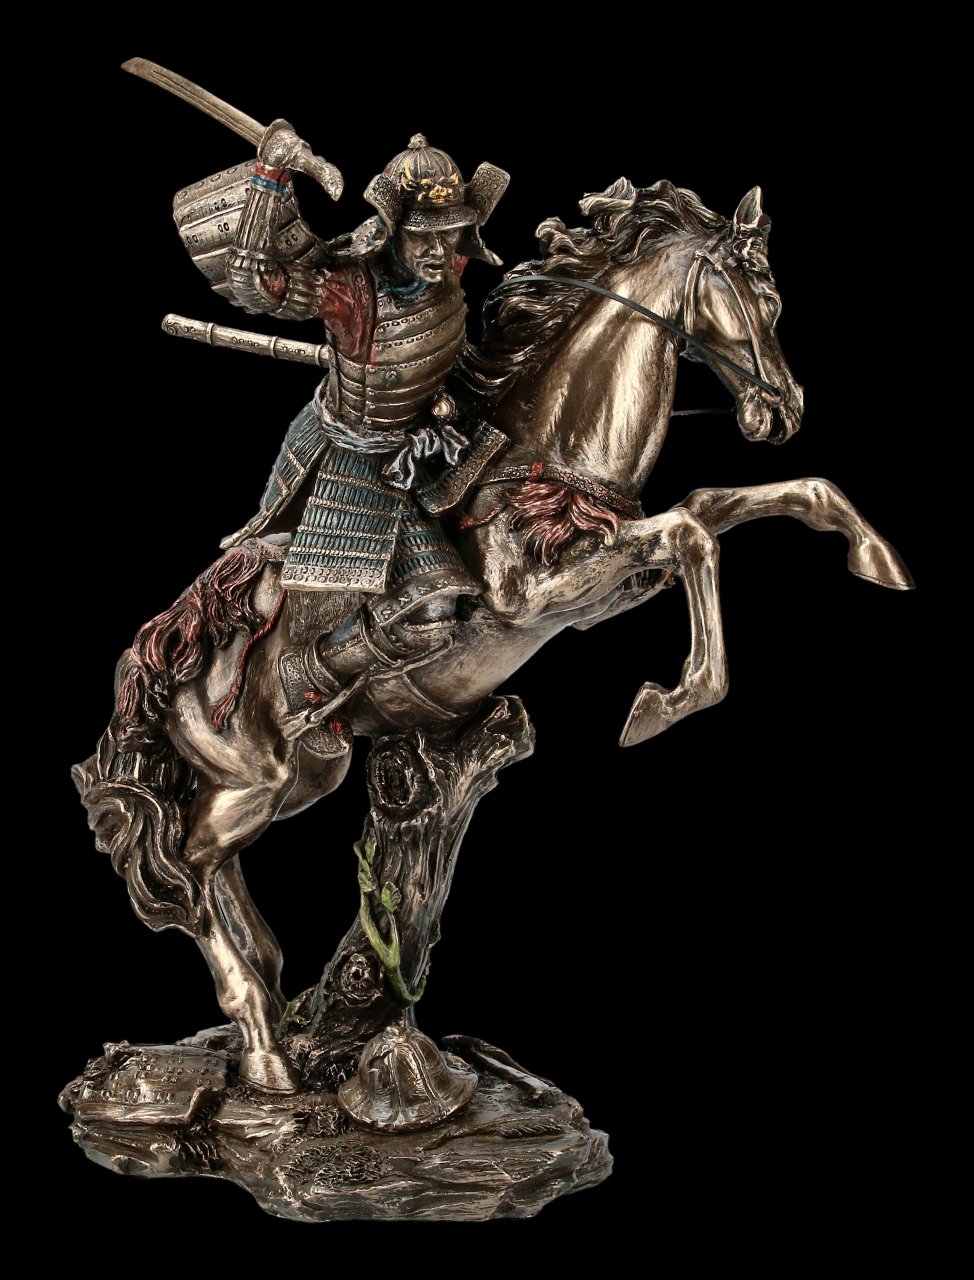 Samurai Figurine - Warrior Rides into the Fight